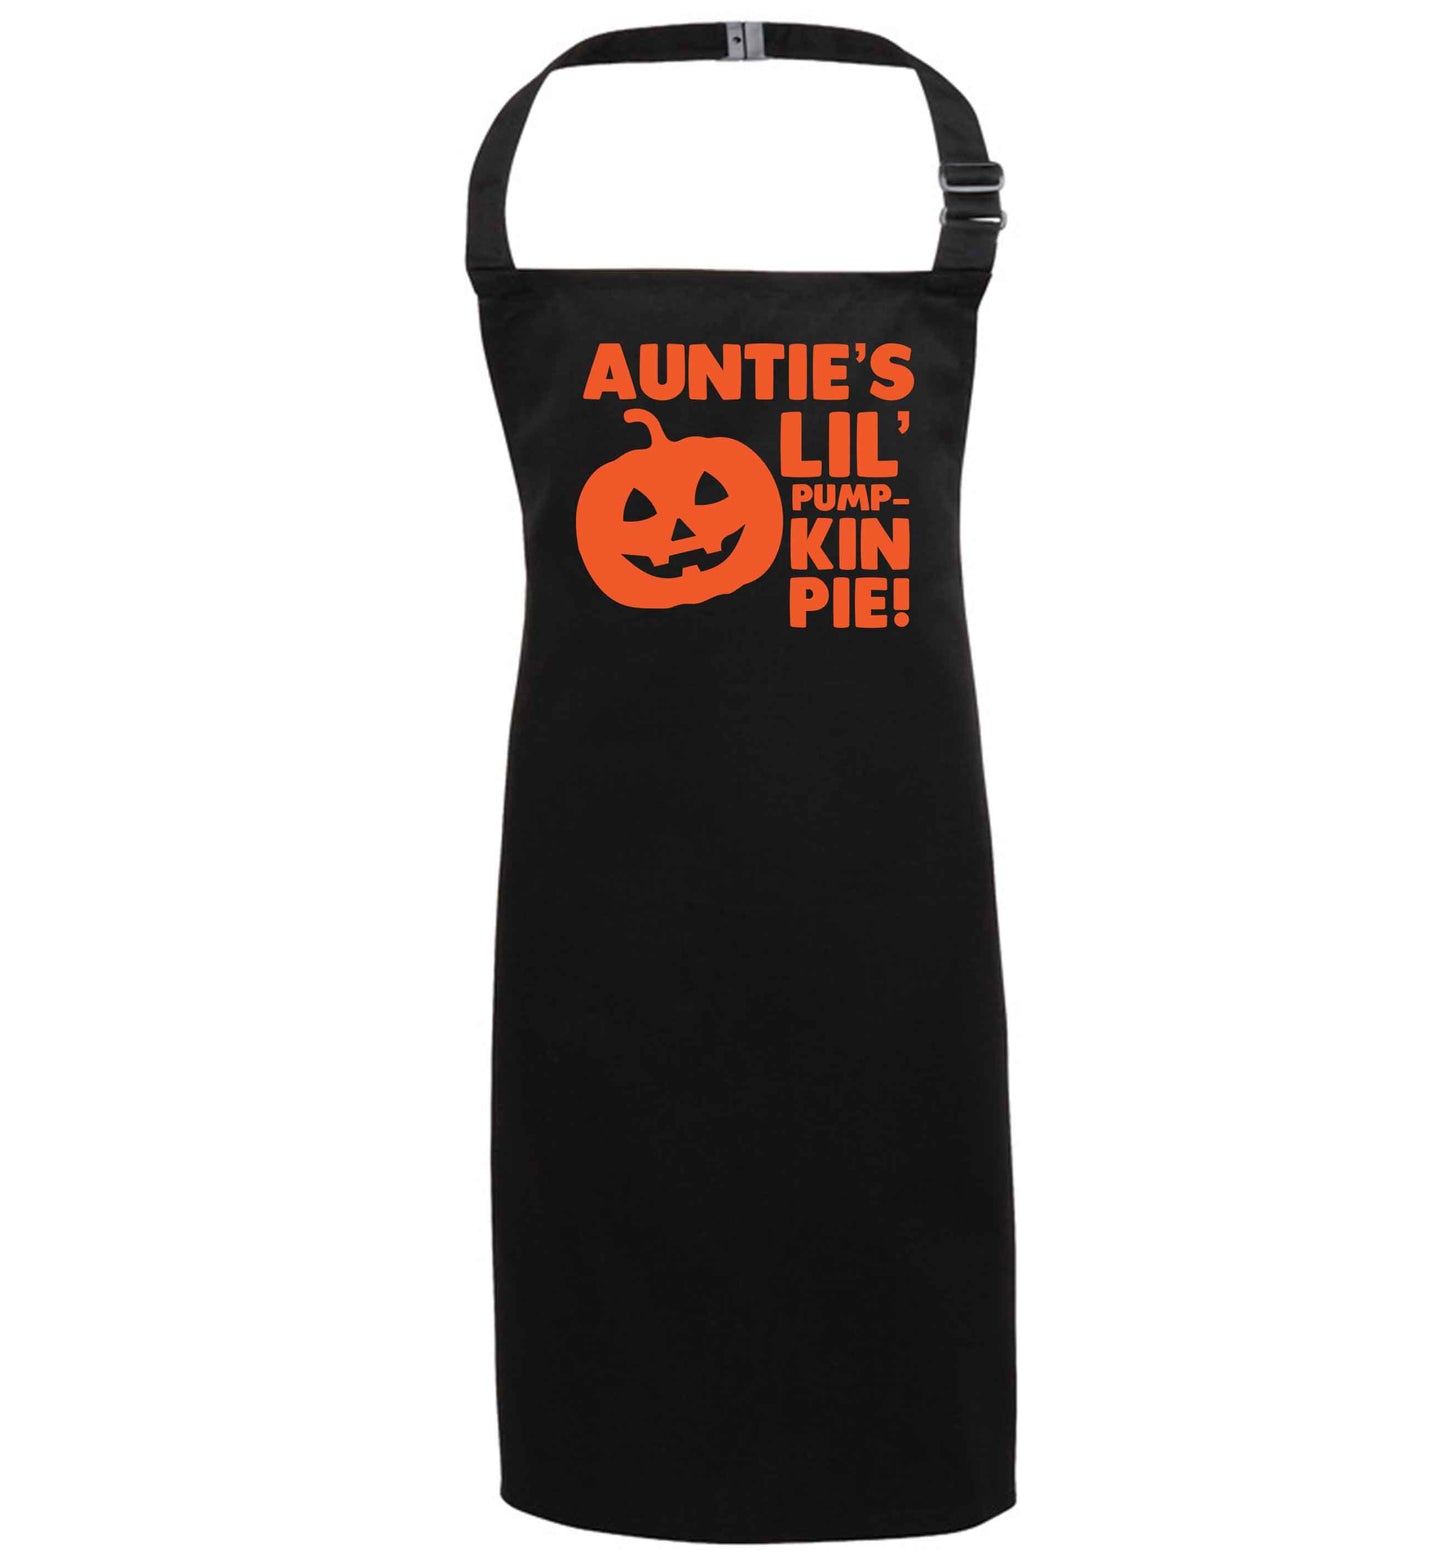 Auntie's lil' pumpkin pie black apron 7-10 years